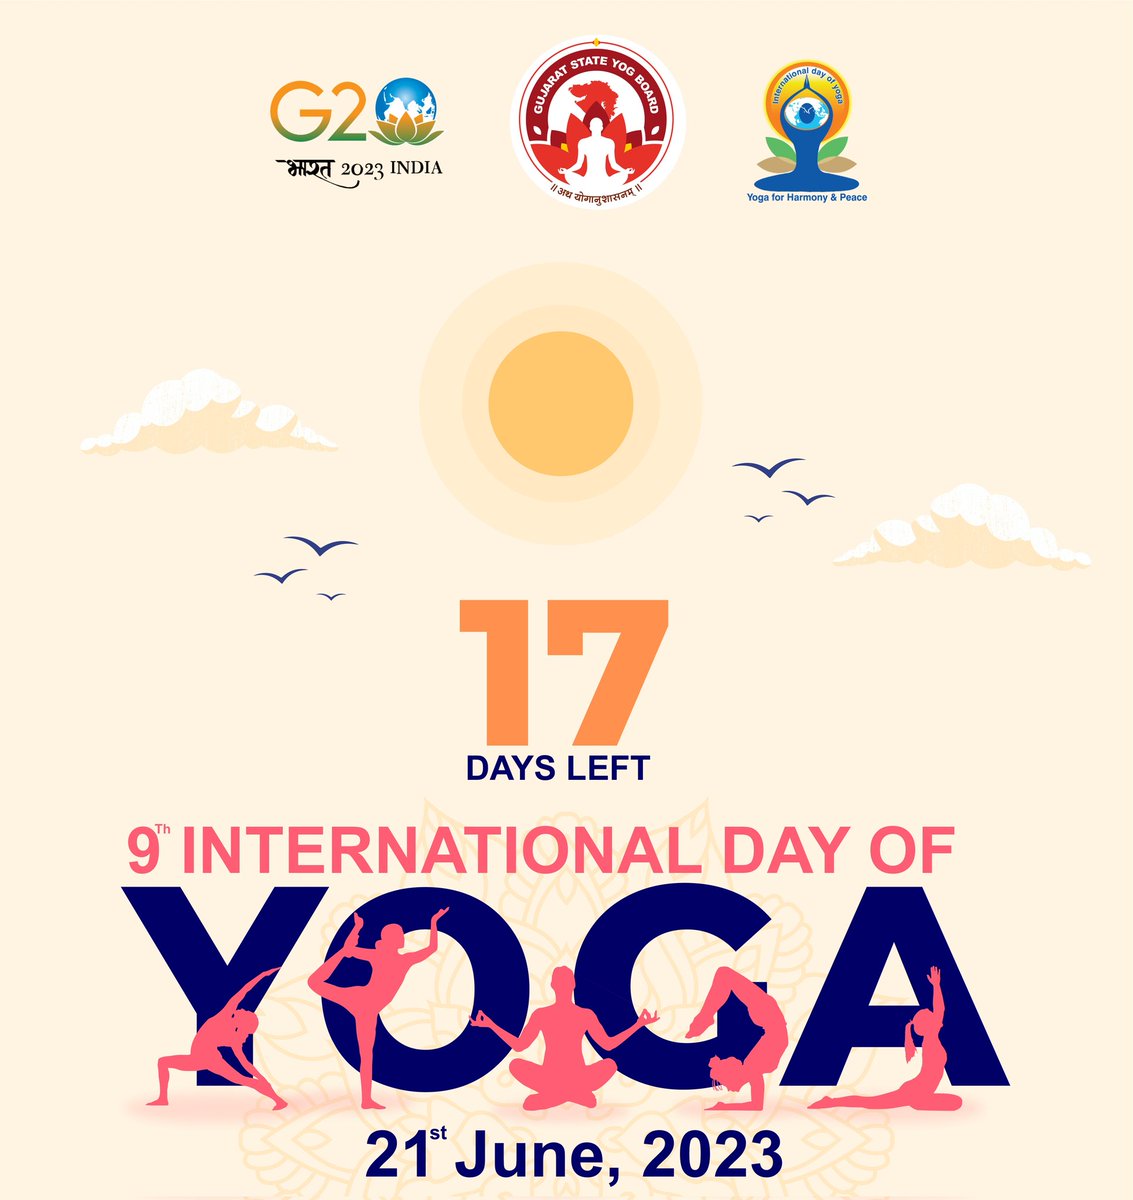 International day of Yoga 2023
Count down started
17 Days left only 

#IDY2023Countdown #GujaratStateYogBoard #yoga #yogaflow #yogapractice #Gujarat #yogabenefits #IDY2023 #yogapose #technique #parsvabakasana #yogafit #instayoga #yogaplay #photobomb #ekapadakoundinyasana…